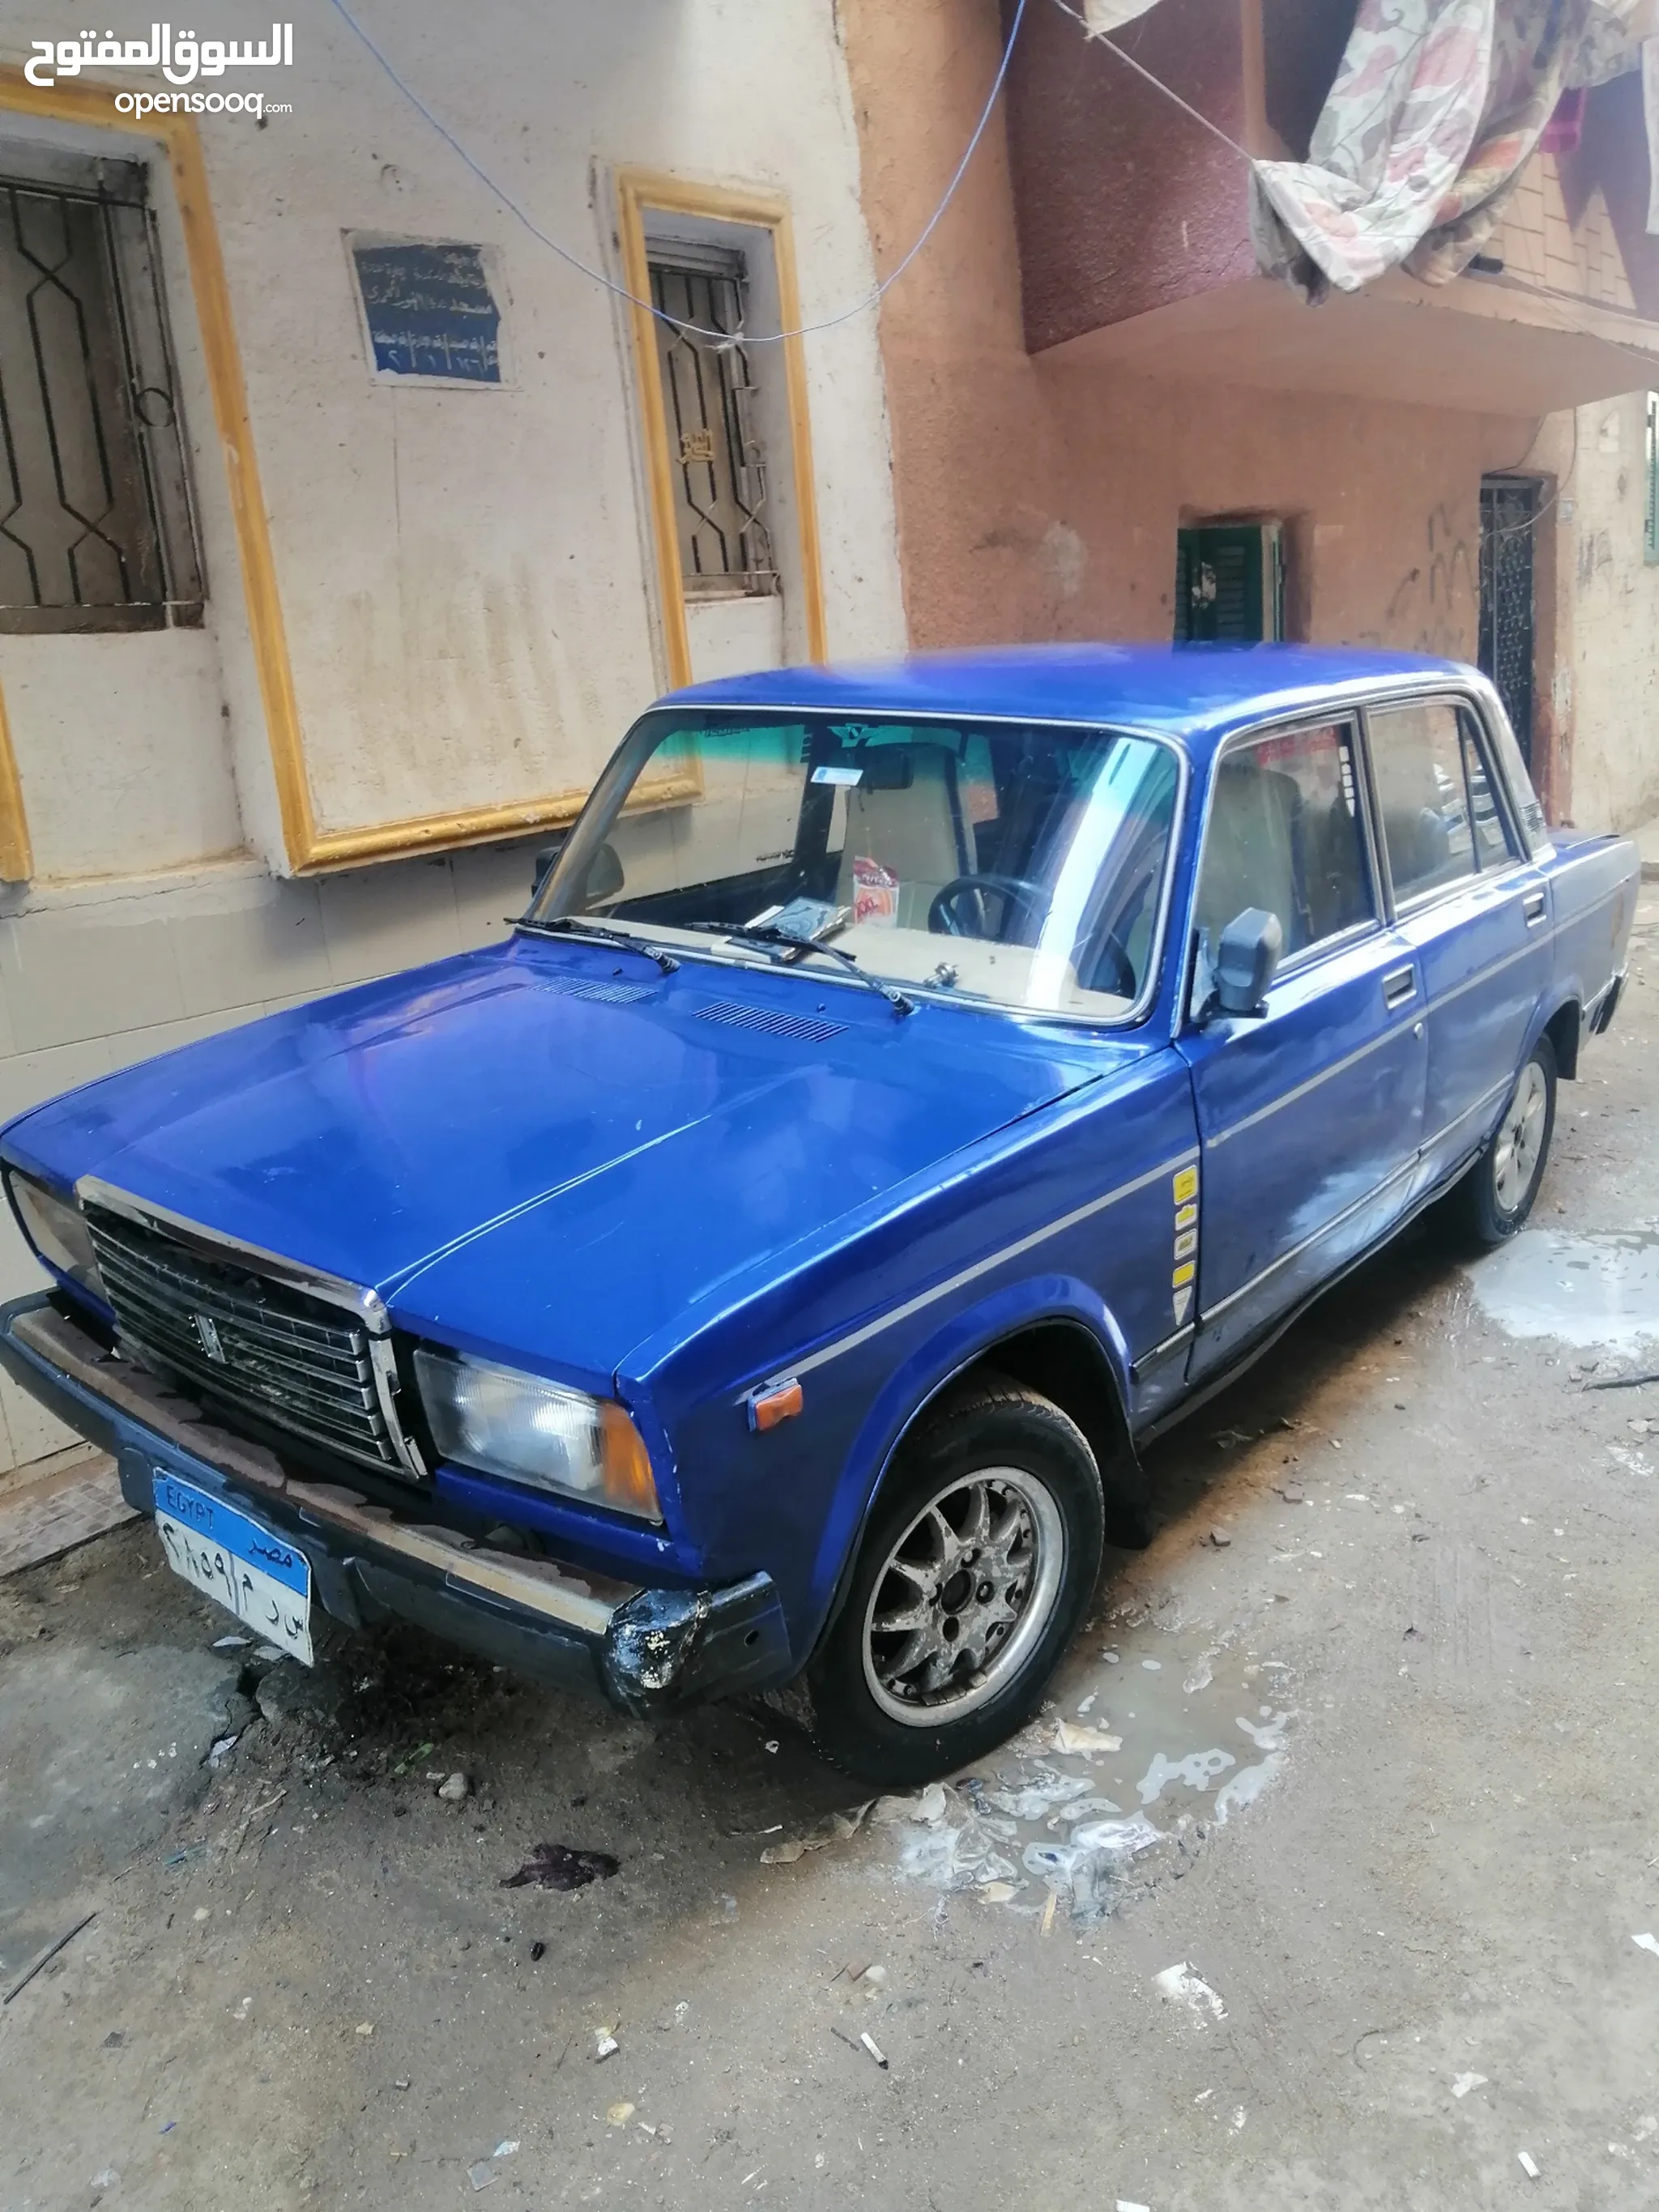 لادا للبيع : سيارات لادا 2107 : جرانتا : 2015 : ارخص الاسعار في الإسكندرية  | السوق المفتوح